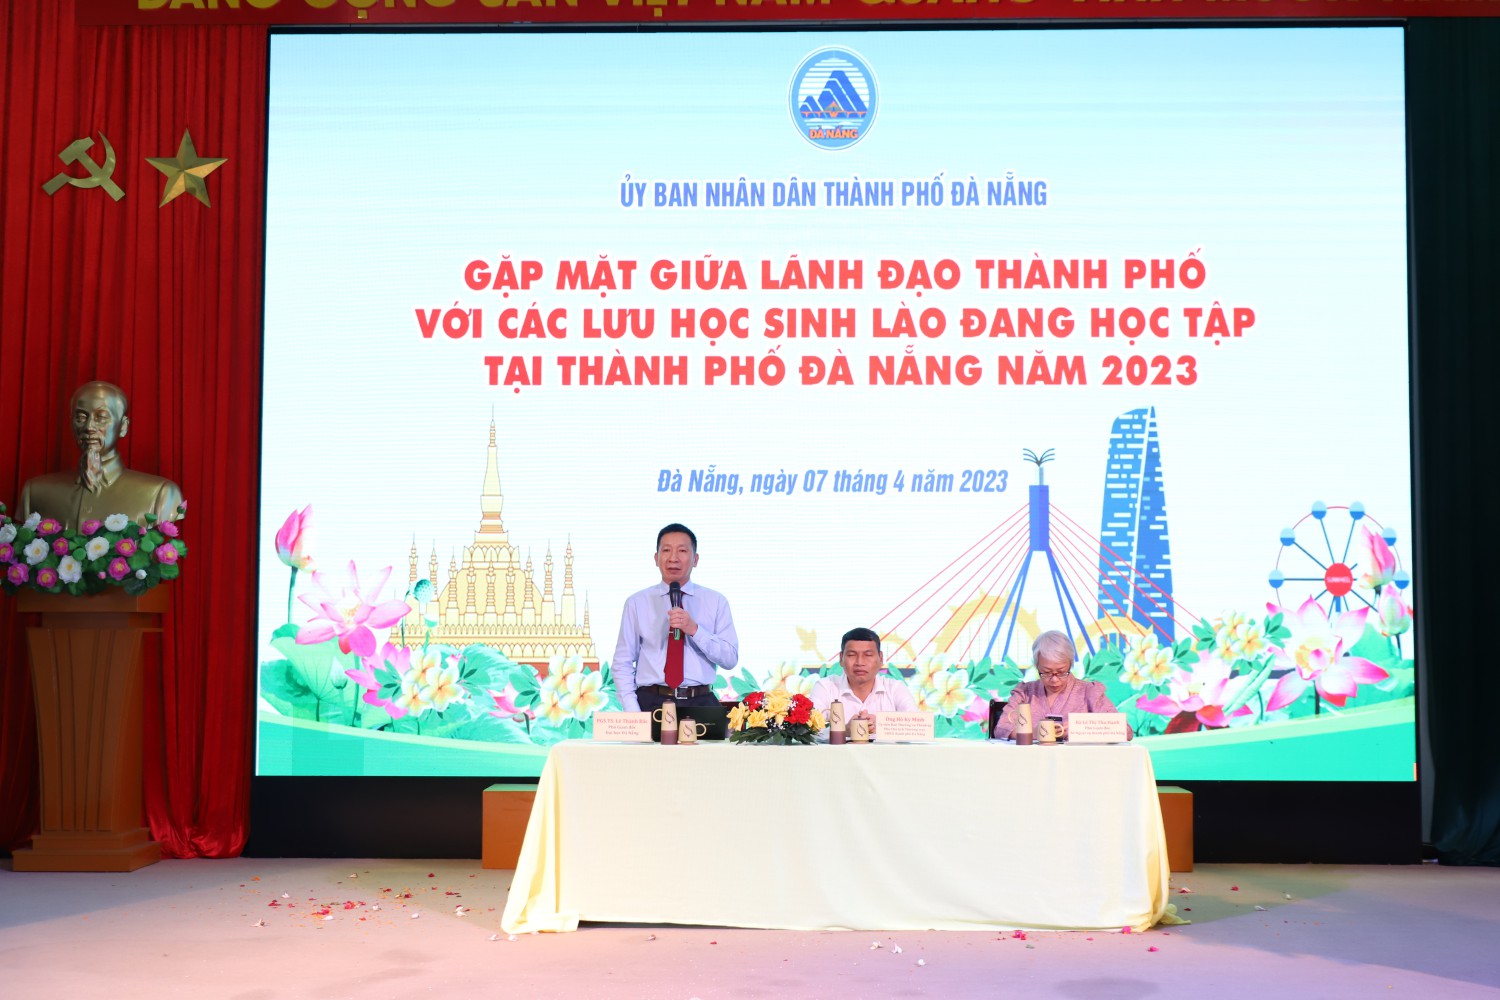 Gặp mặt giữa lãnh đạo thành phố với các Lưu học sinh Lào đang học tập tại thành phố Đà Nẵng năm 2023